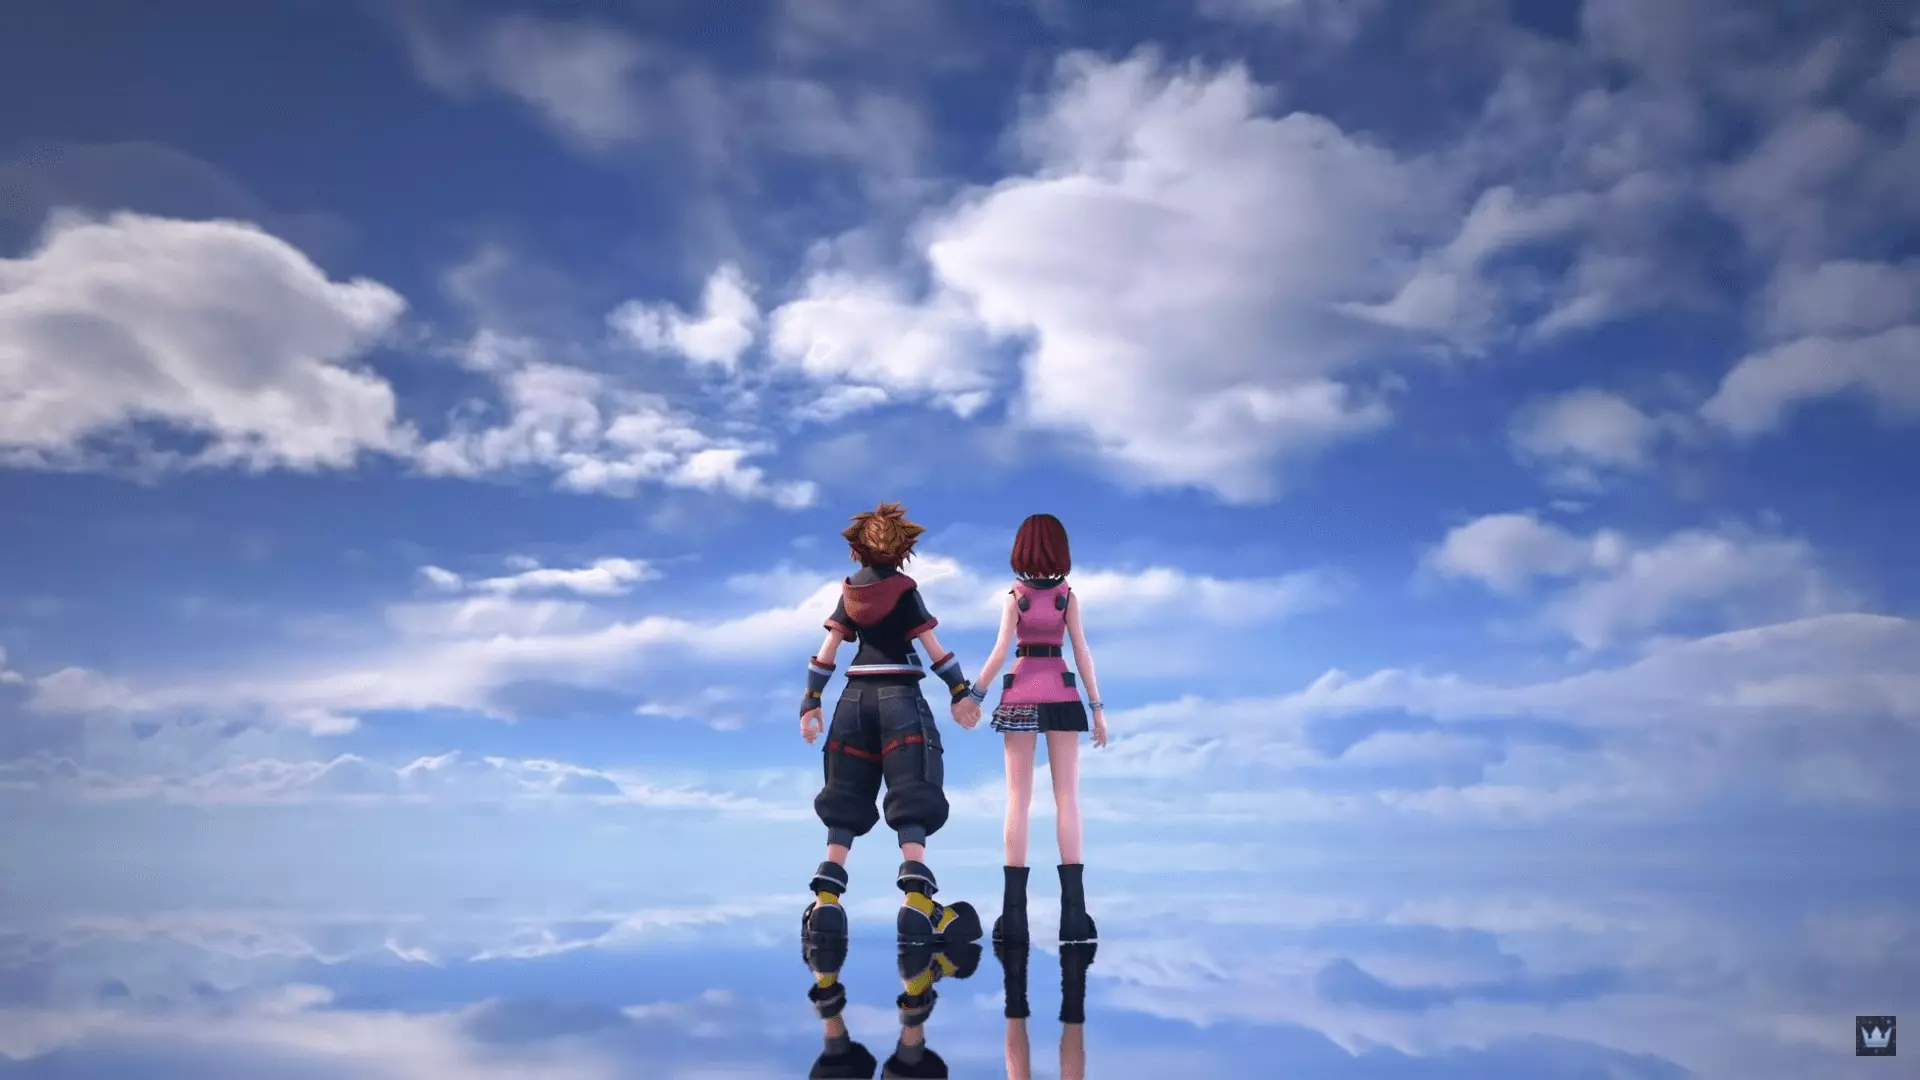 Kingdom Hearts III - это ролевая игра 2019 года, разработанная и изданная Square Enix для PlayStation 4 и Xbox One.